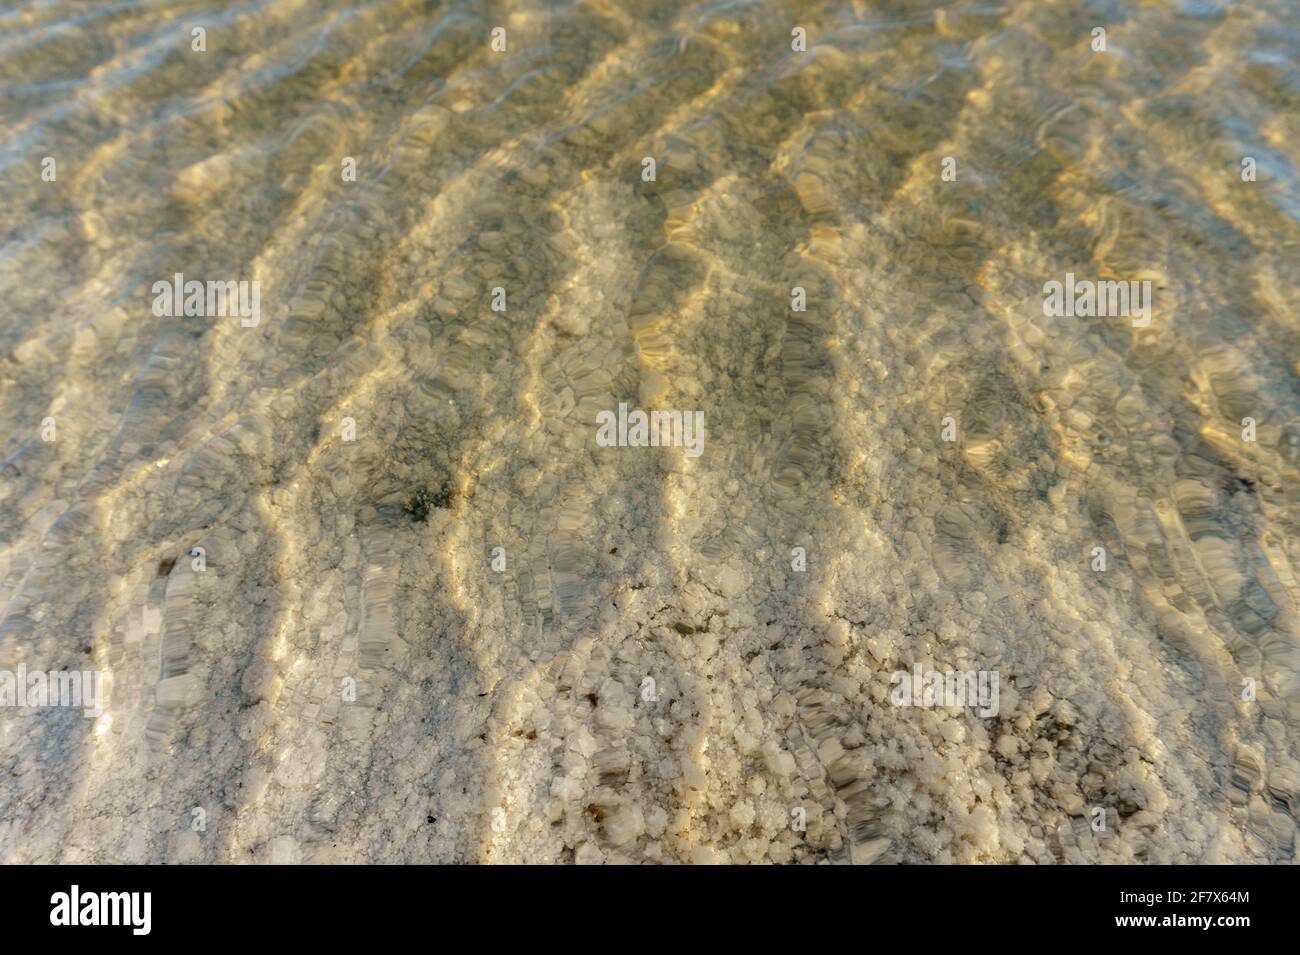 Vista sul fondo del lago salato Baskunchak attraverso l'acqua limpida. Cristalli di sale sul fondo. Foto Stock